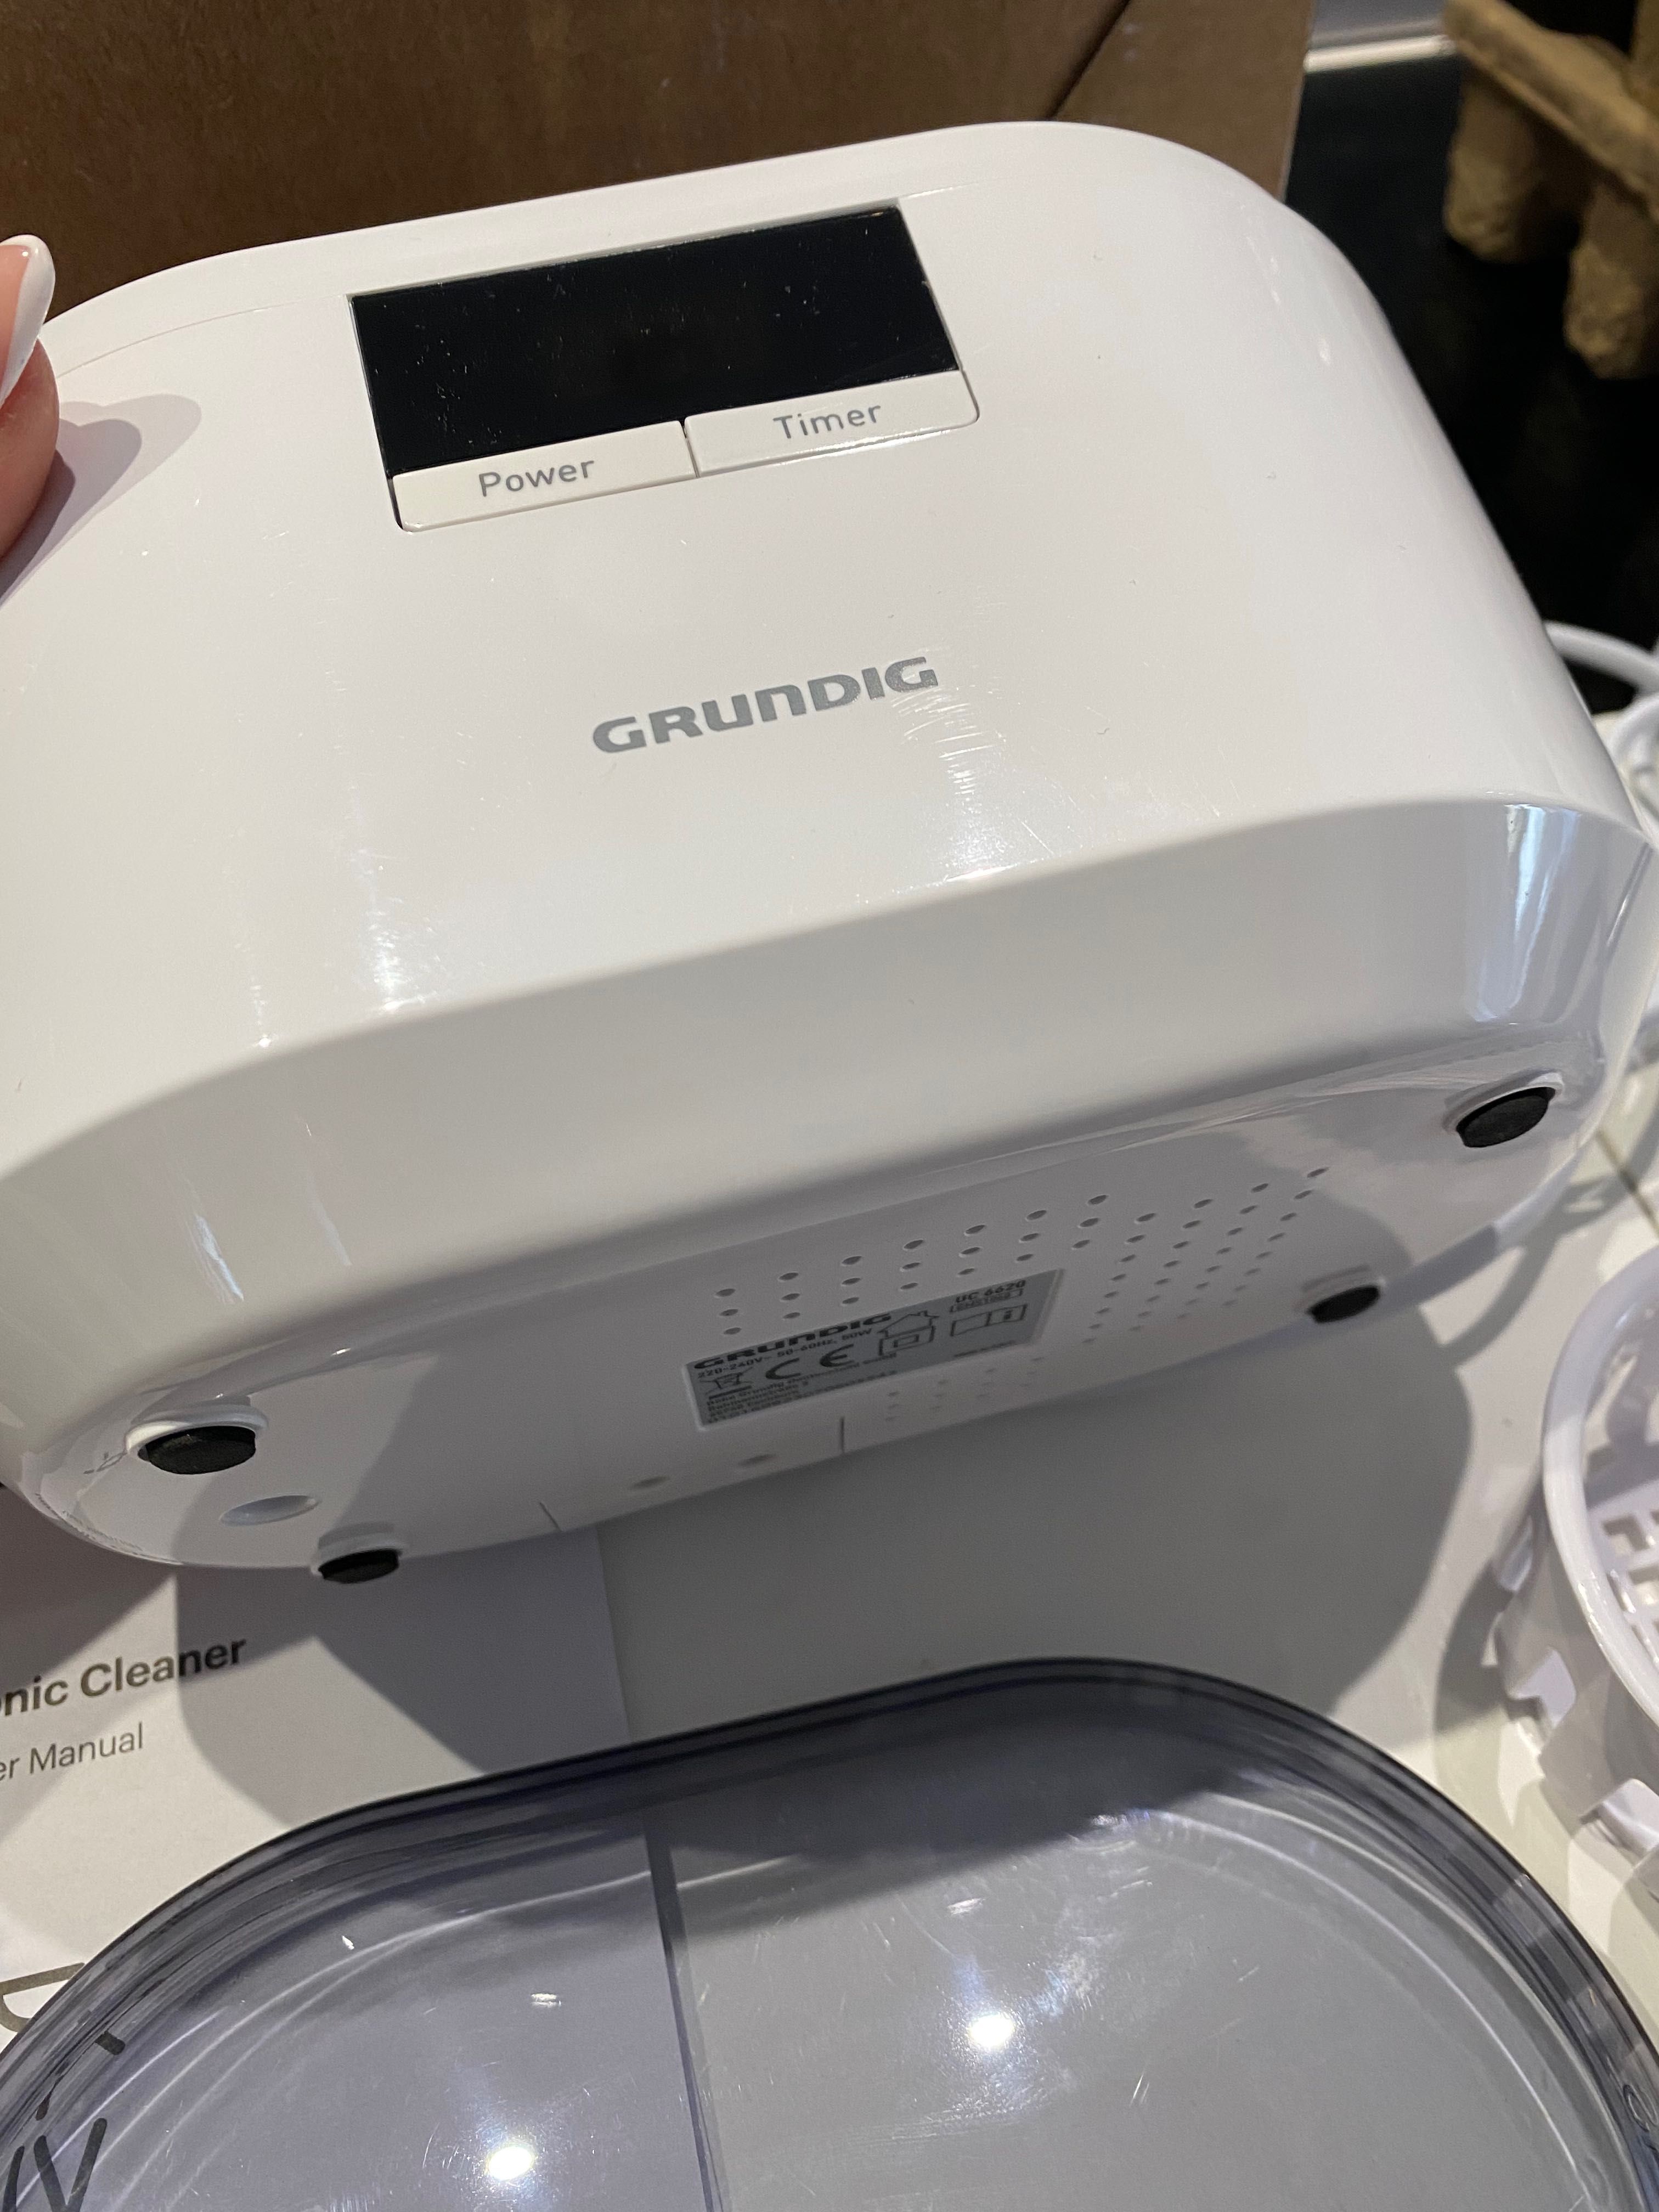 Grundig UC 6620 myjka ultradźwiękowa z funkcją timera